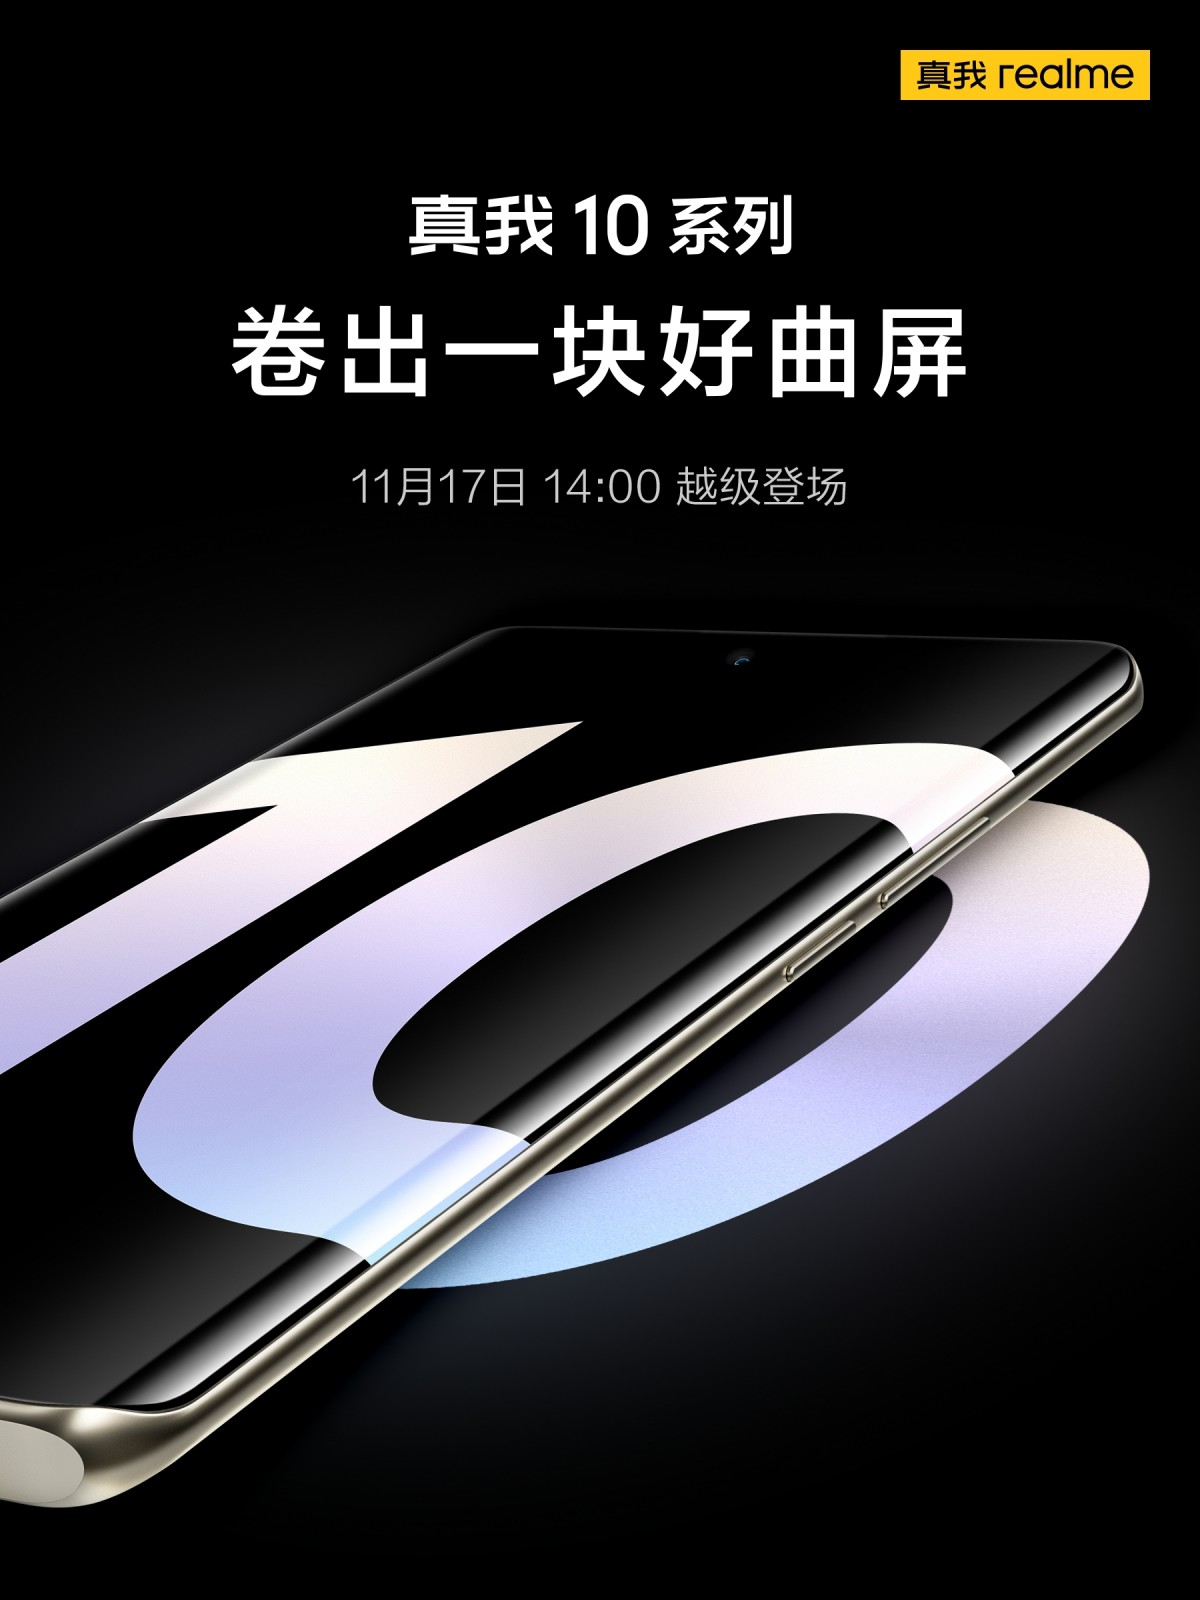 سری Realme 10 در تاریخ 17 نوامبر وارد چین می شود، نسخه های 5G و Pro+ انتظار می رود